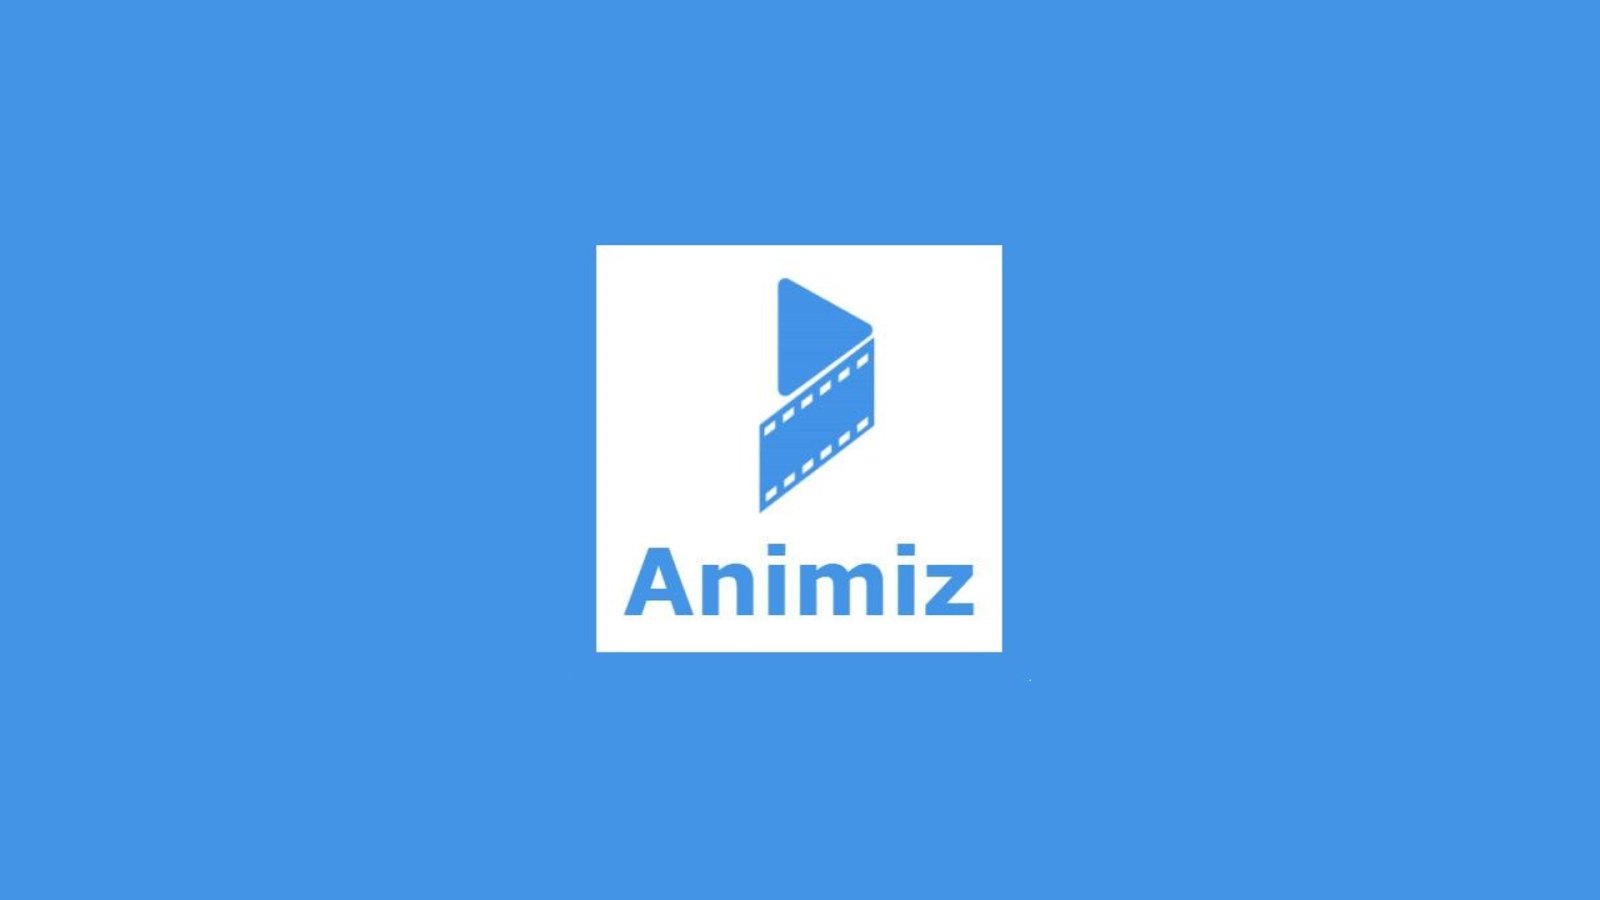 animiz whiteboard animation software